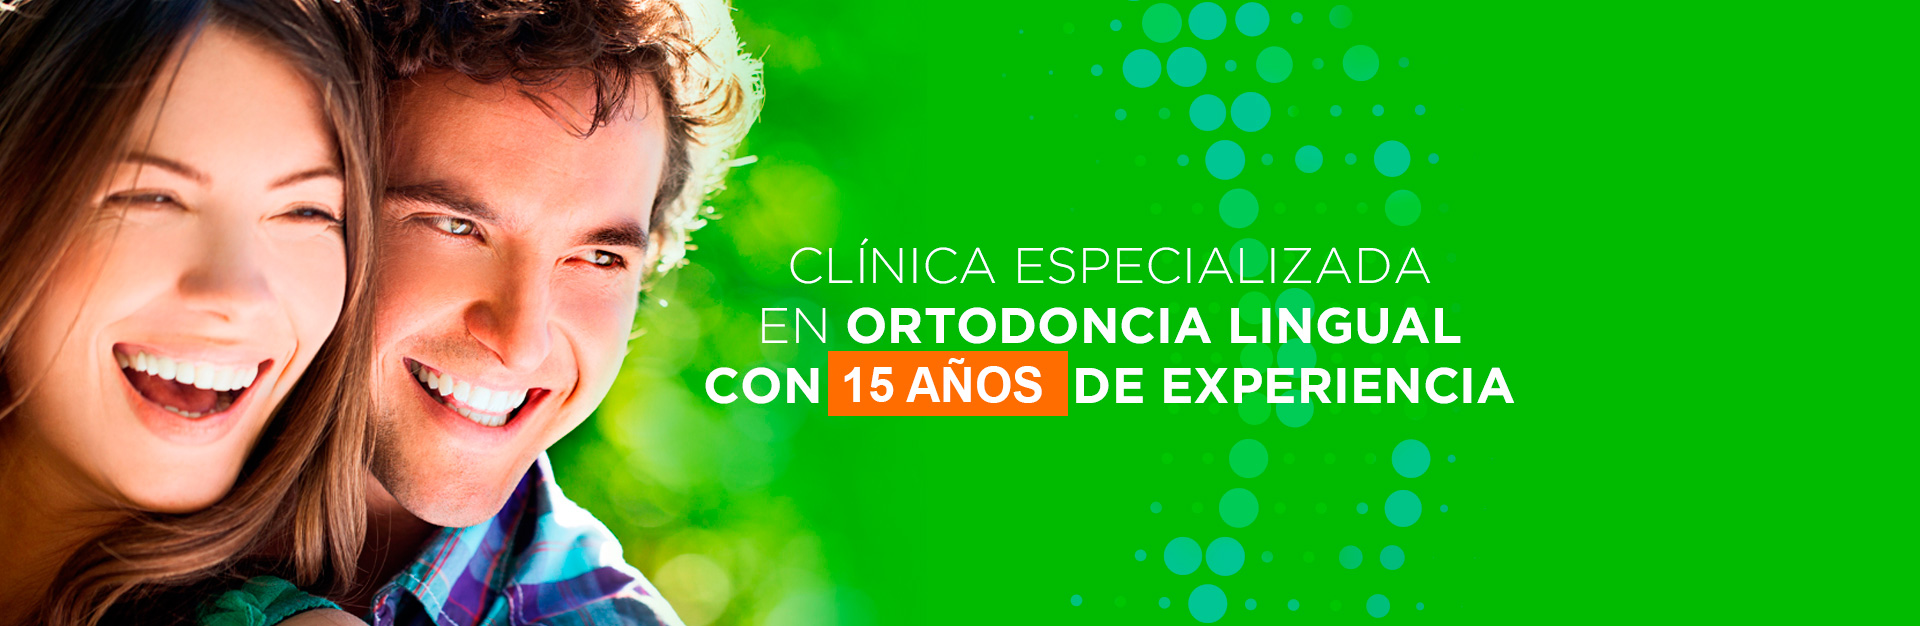 Cl�nica especializada en ortodoncia lingual con 12 a�os de experiencia